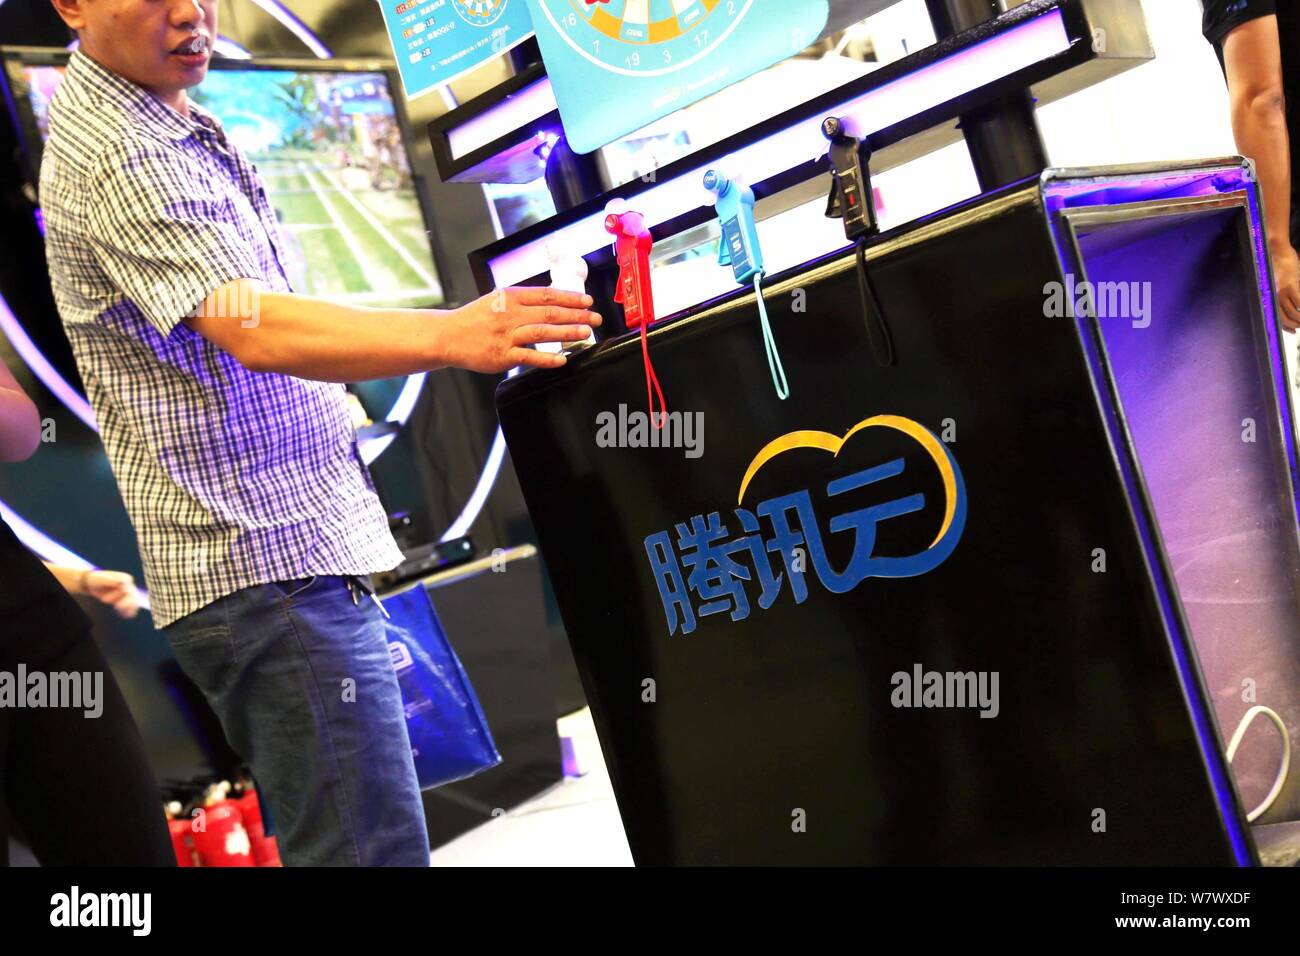 ---- Leute besuchen Sie den Stand von qcloud, die online cloud computing Einheit von Tencent, während des 13 China Digital Entertainment Expo, auch bekannt als Stockfoto